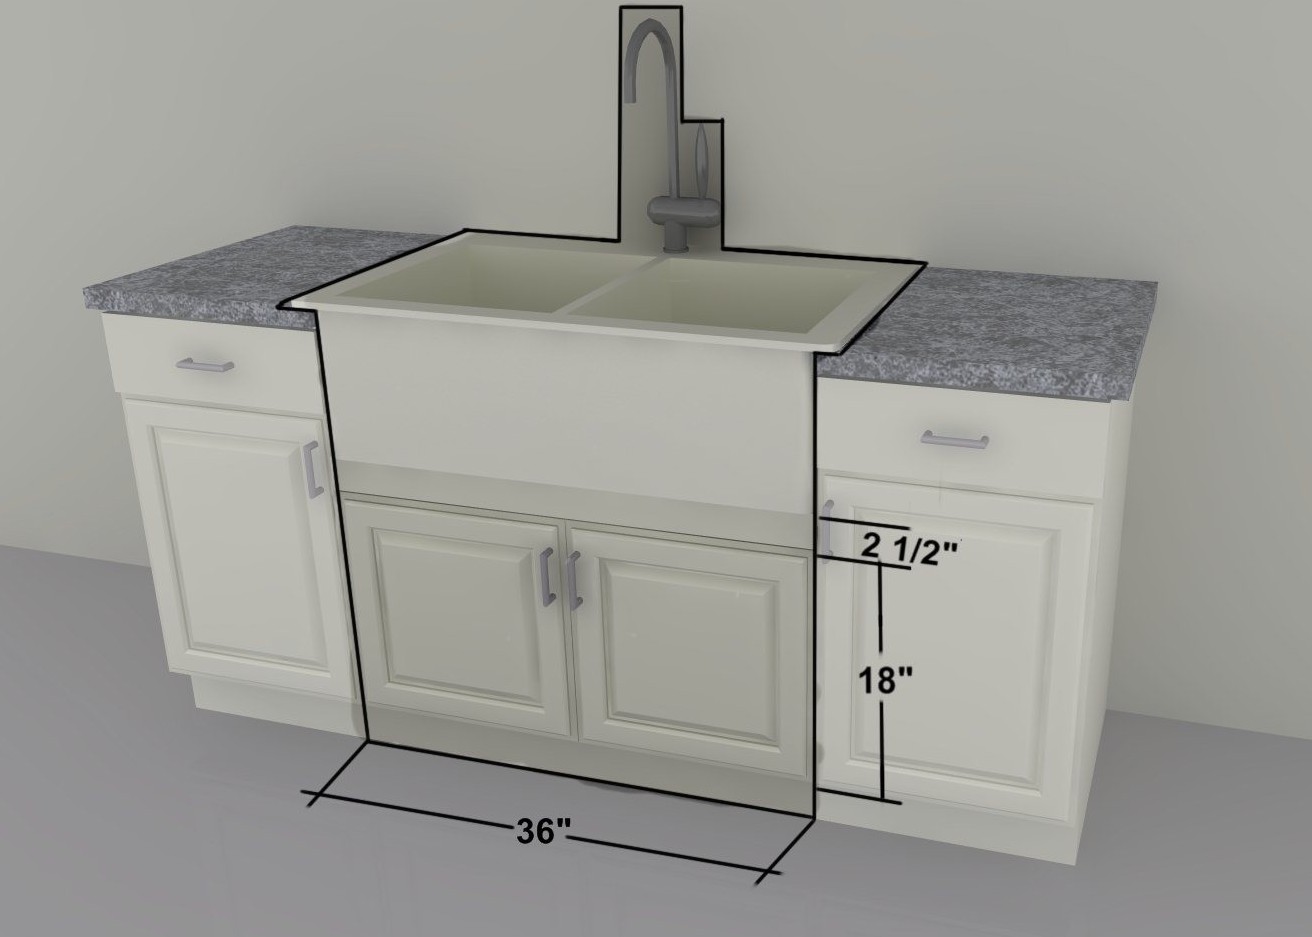 18 inch kitchen sink cabinet